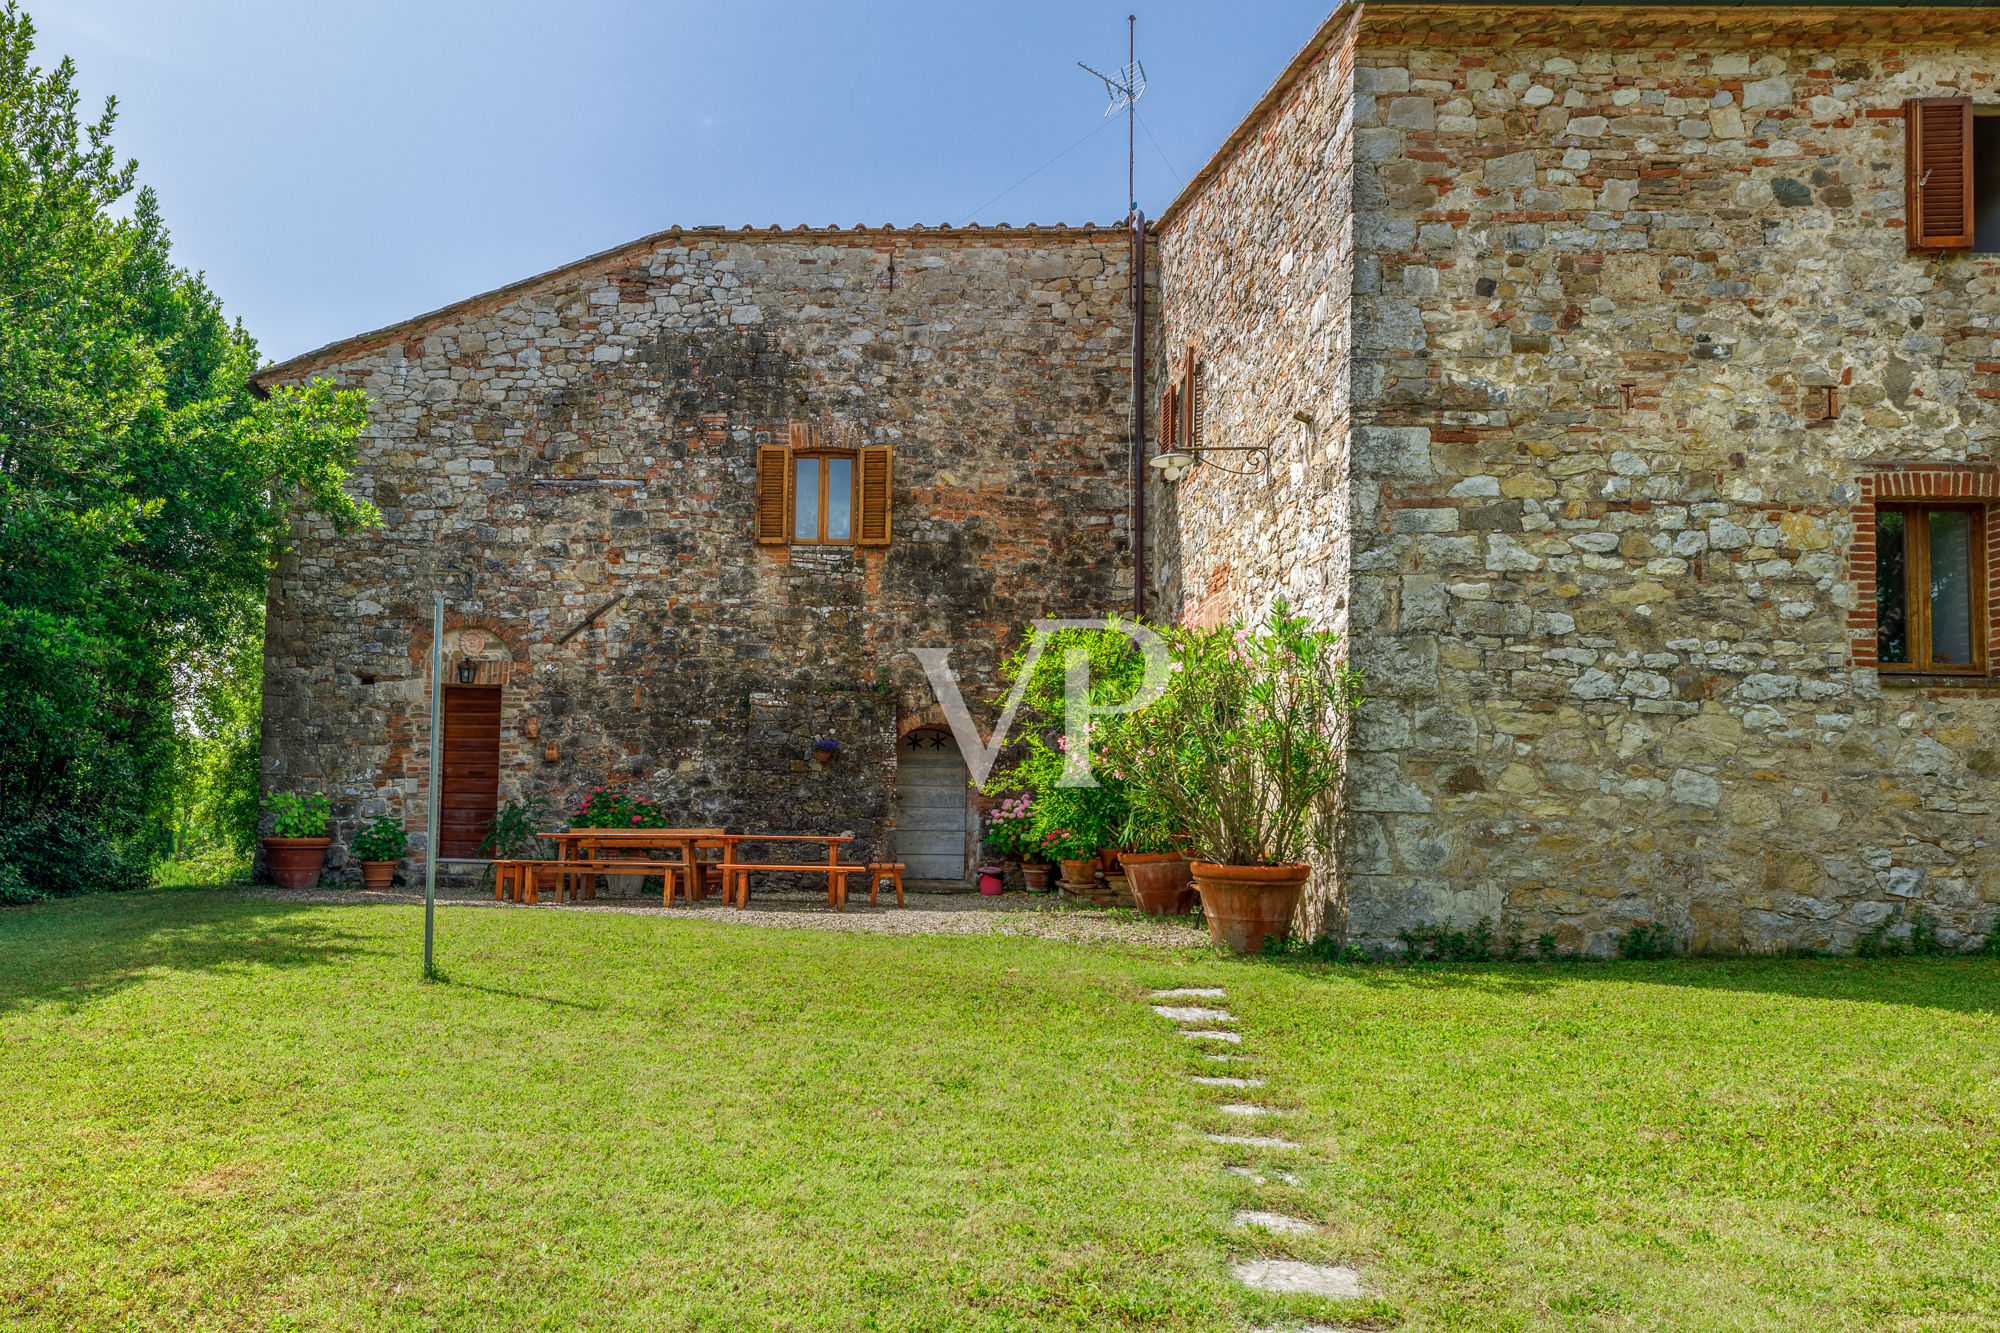 Chianti, Toscane : magnifique domaine historique avec villa indépendante et deux annexes entourées de verdure